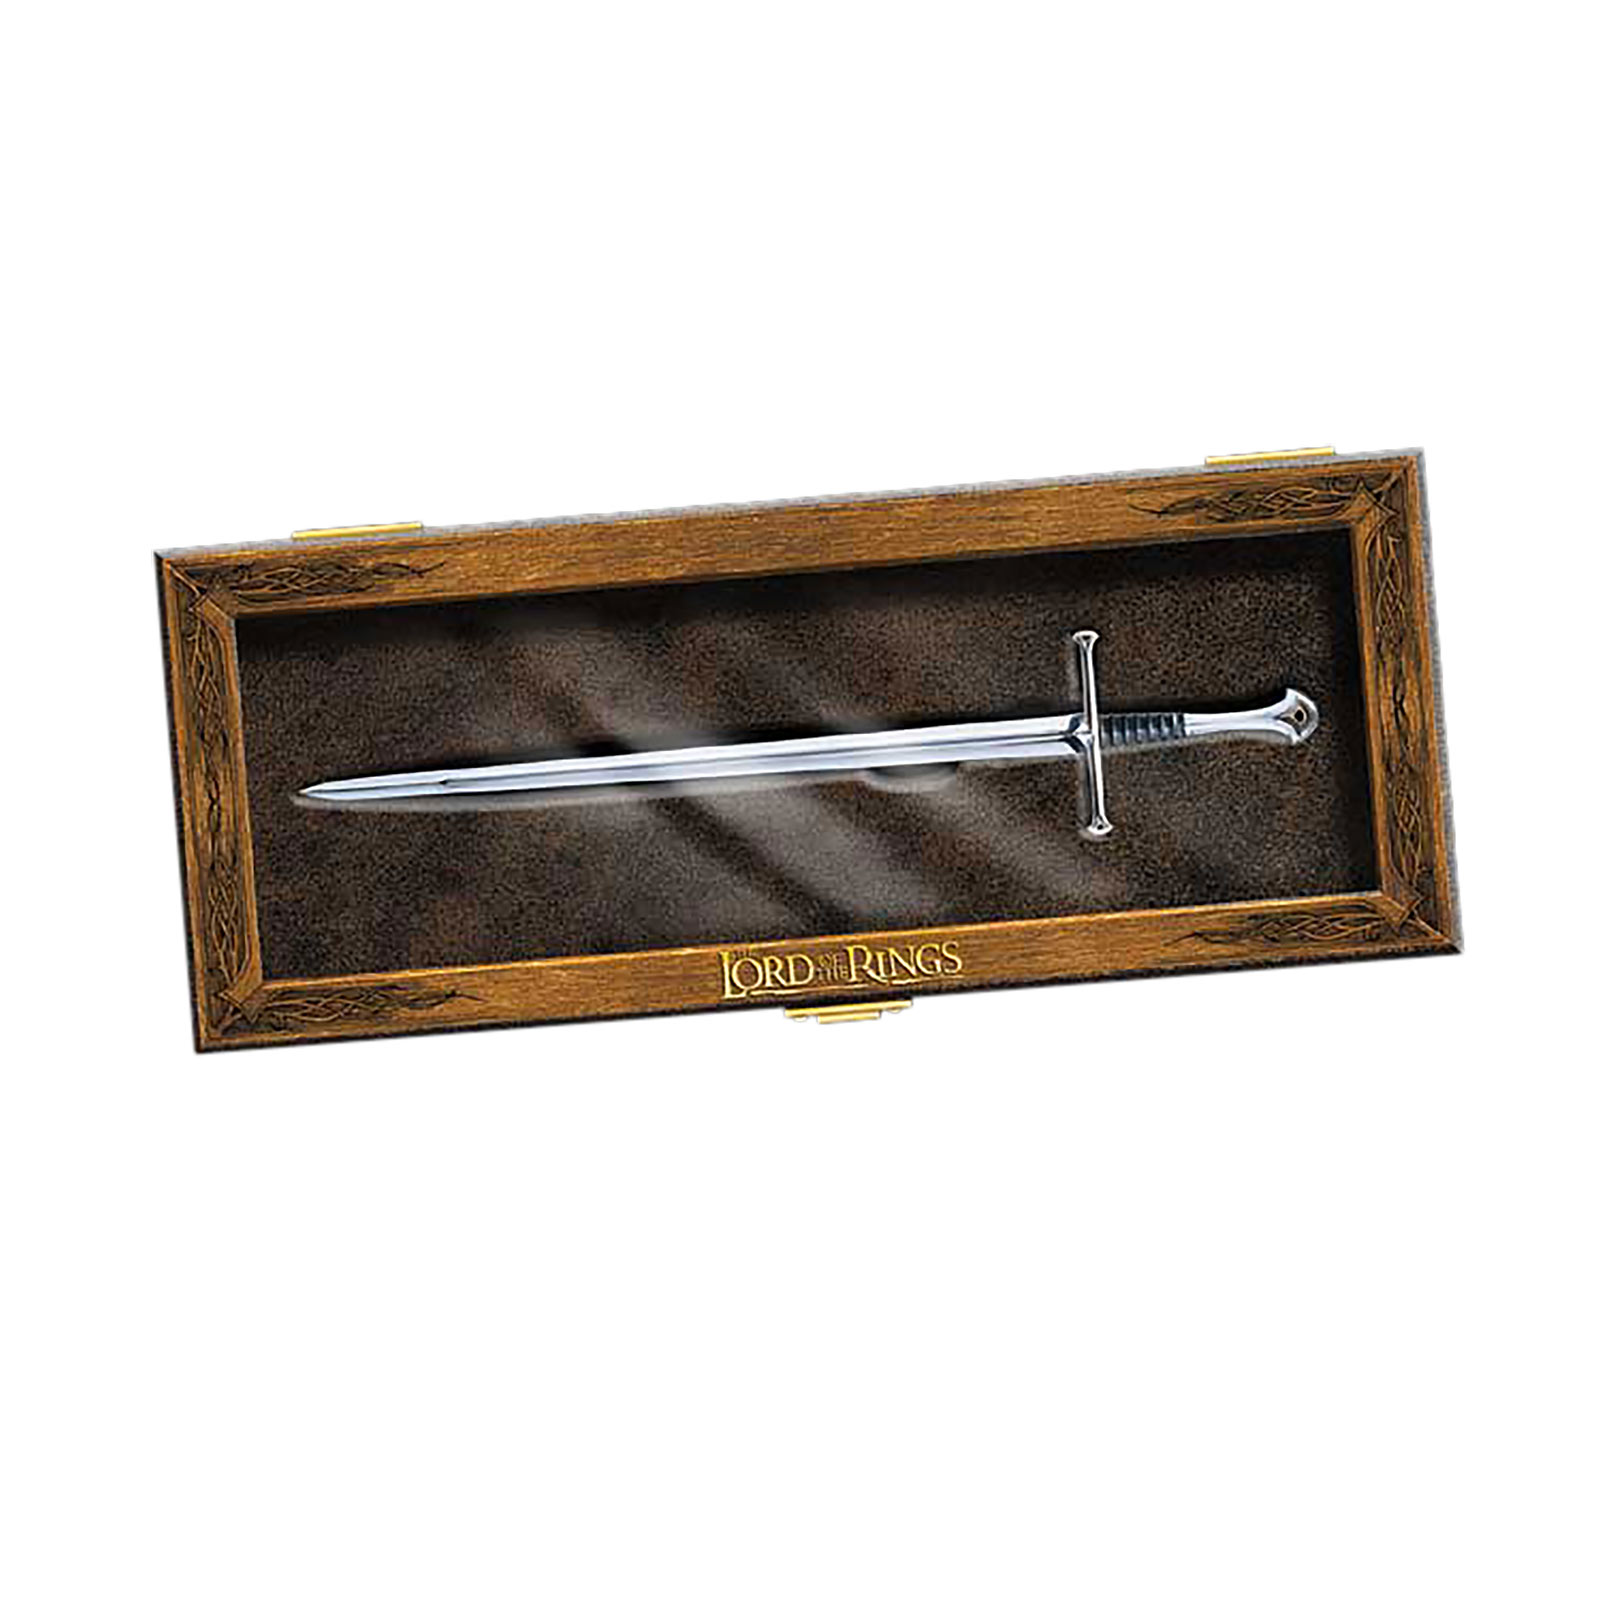 Aragorn Schwert Narsil Miniatur Brieföffner Noble Collection Herr der Ringe